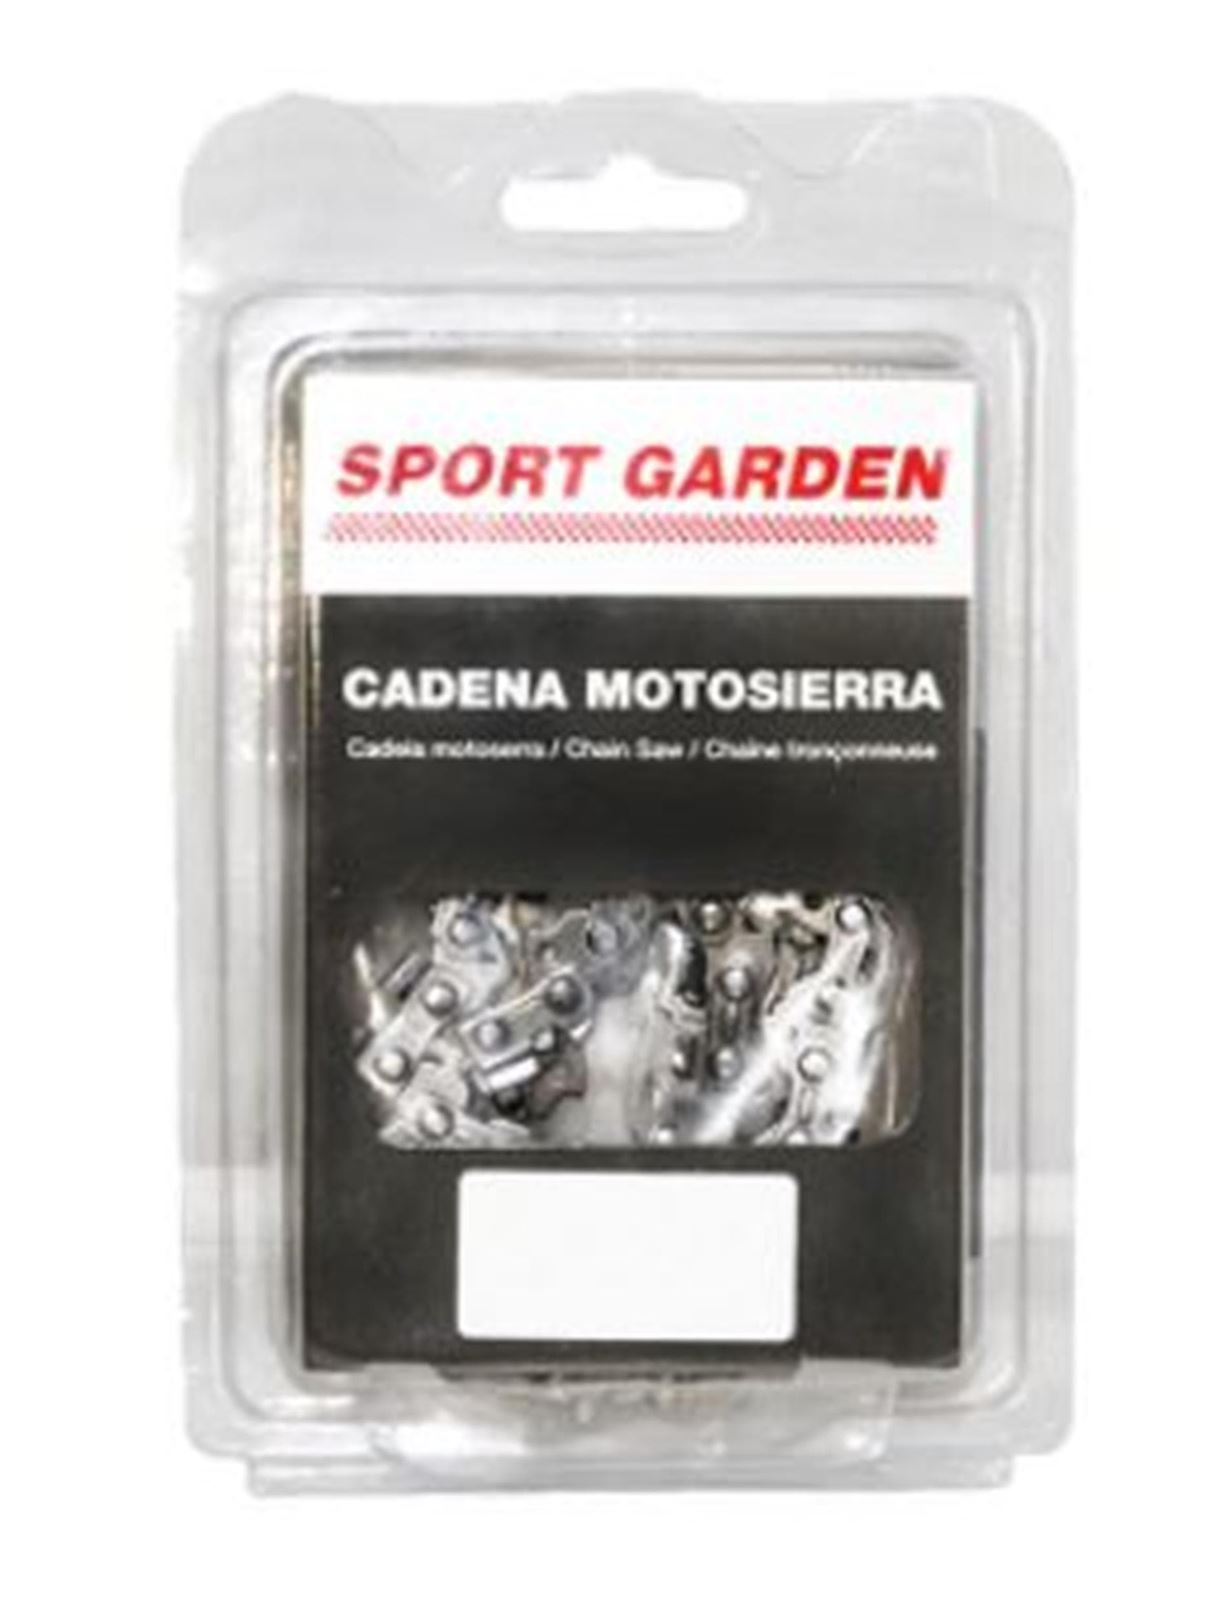 SPORT GARDEN - CADENA MOTOSIERRA 325"0,58,72 ESLB - Imagen 1